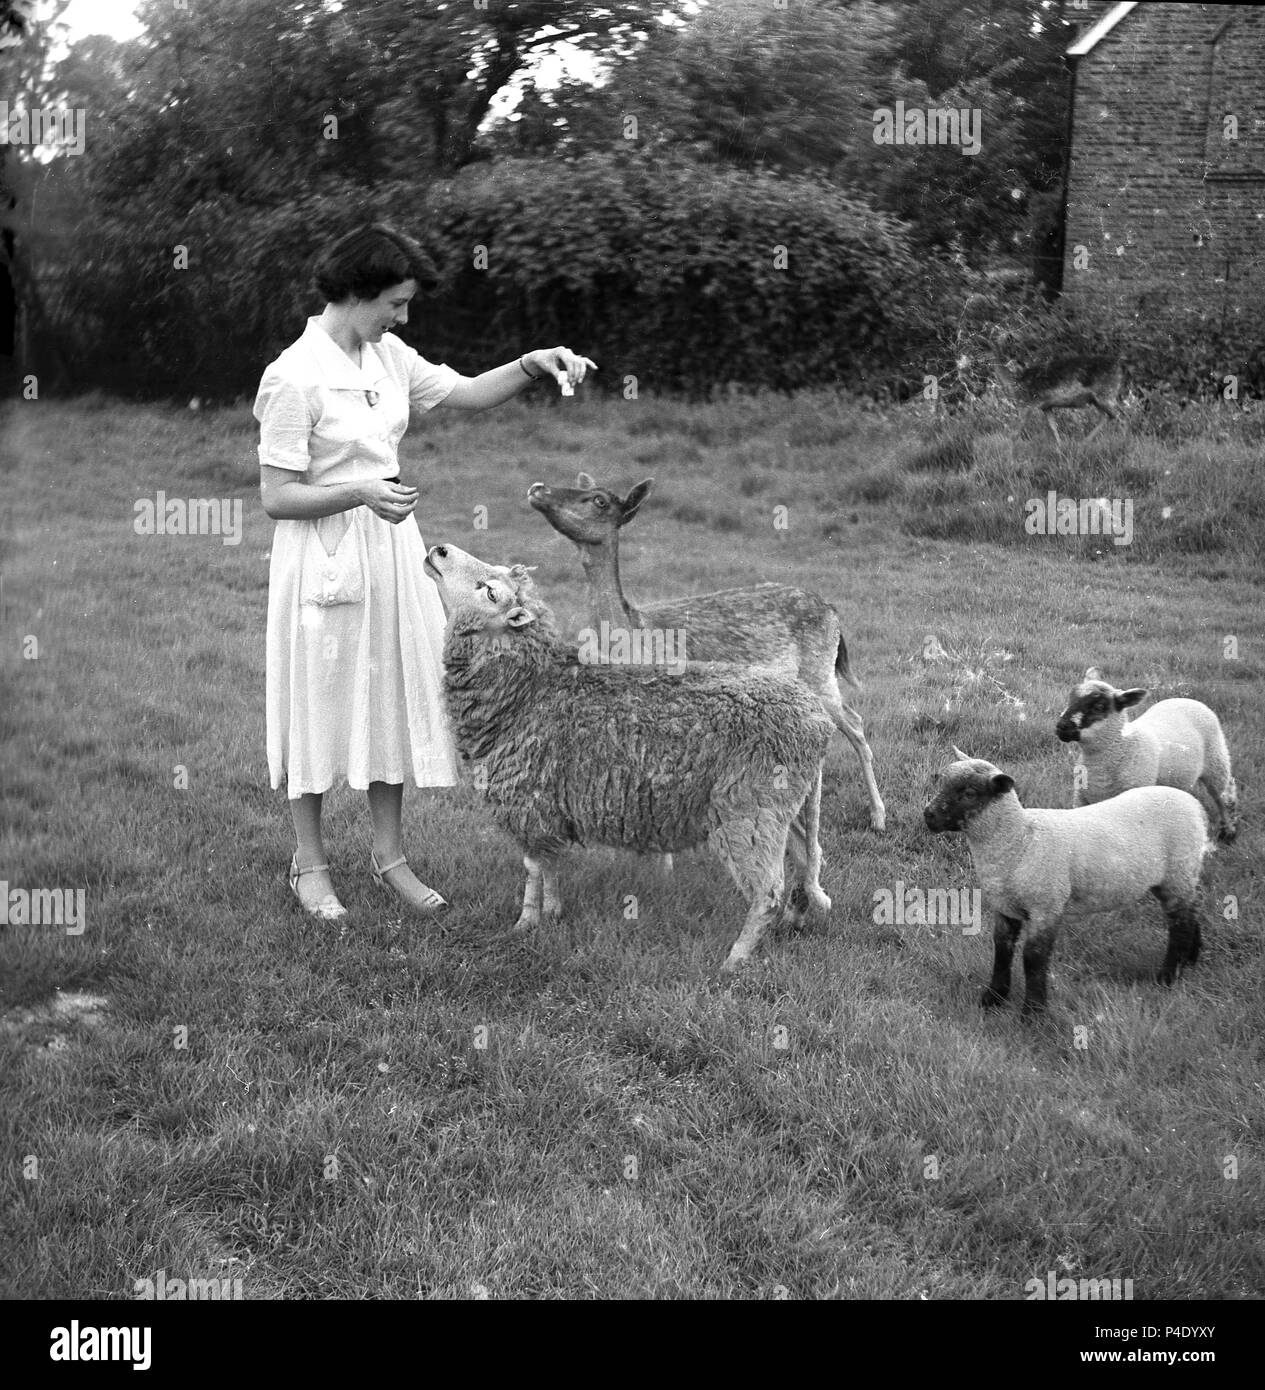 Années 1950, historiques, une dame à l'extérieur dans un champ l'alimentation - Morceaux de sucre ? - Un chevreuil et un mouton, avec ses deux lampes peu présents, England, UK. Banque D'Images